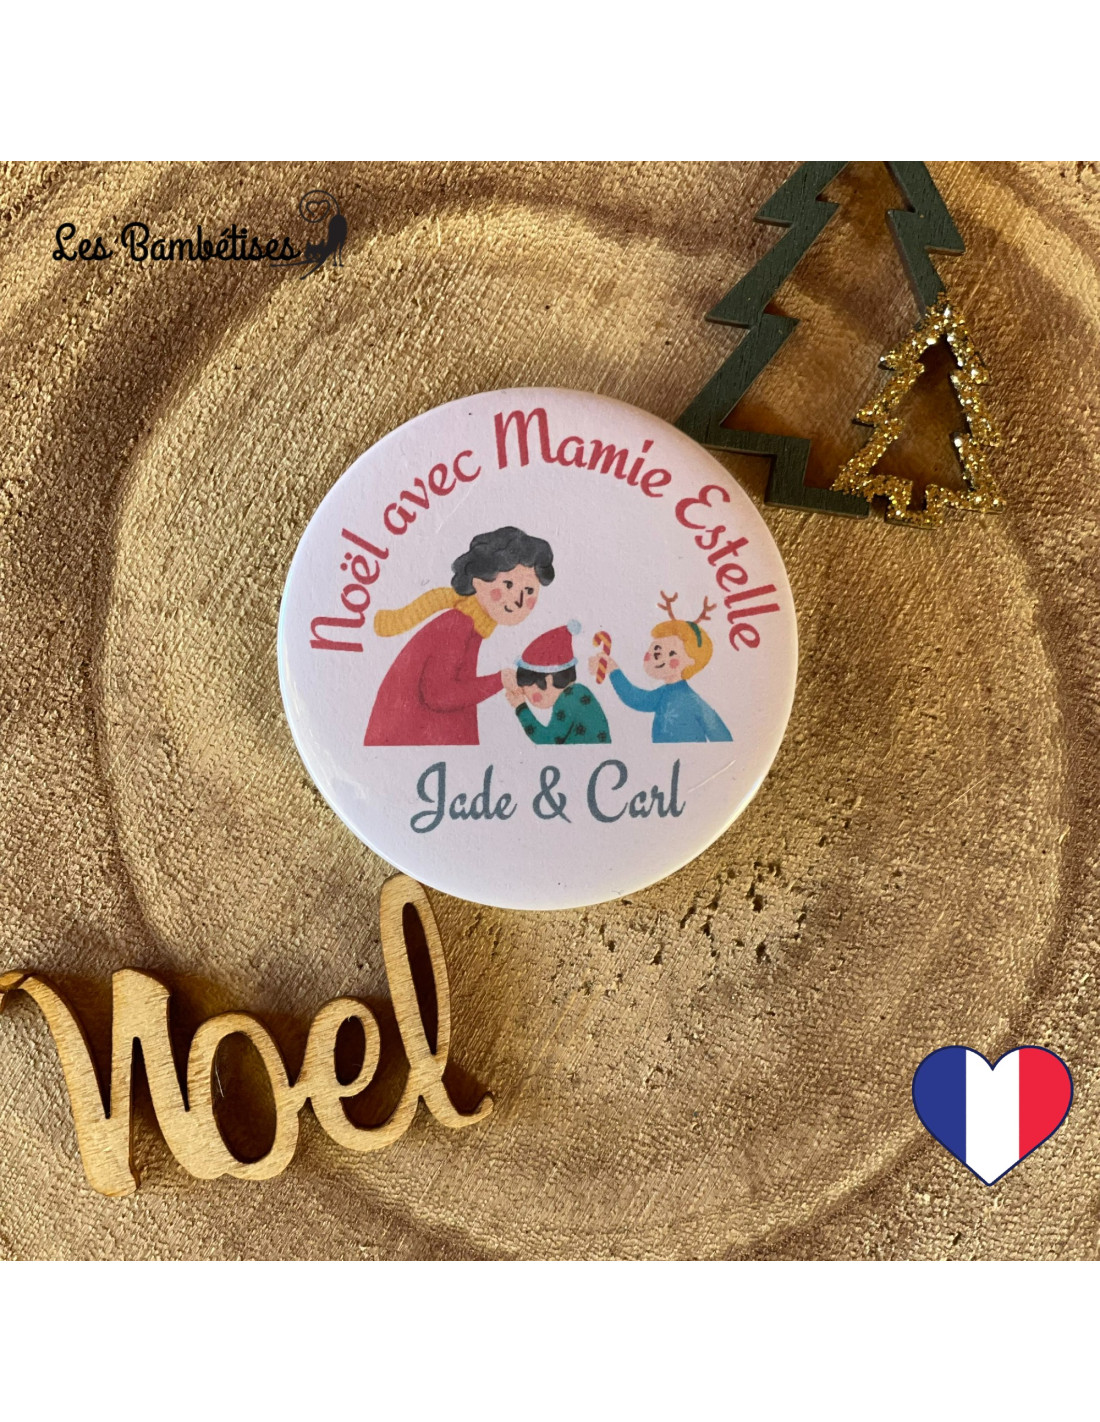 Badge Personnalisé Famille Cadeau Invité Noël - Les Bambetises